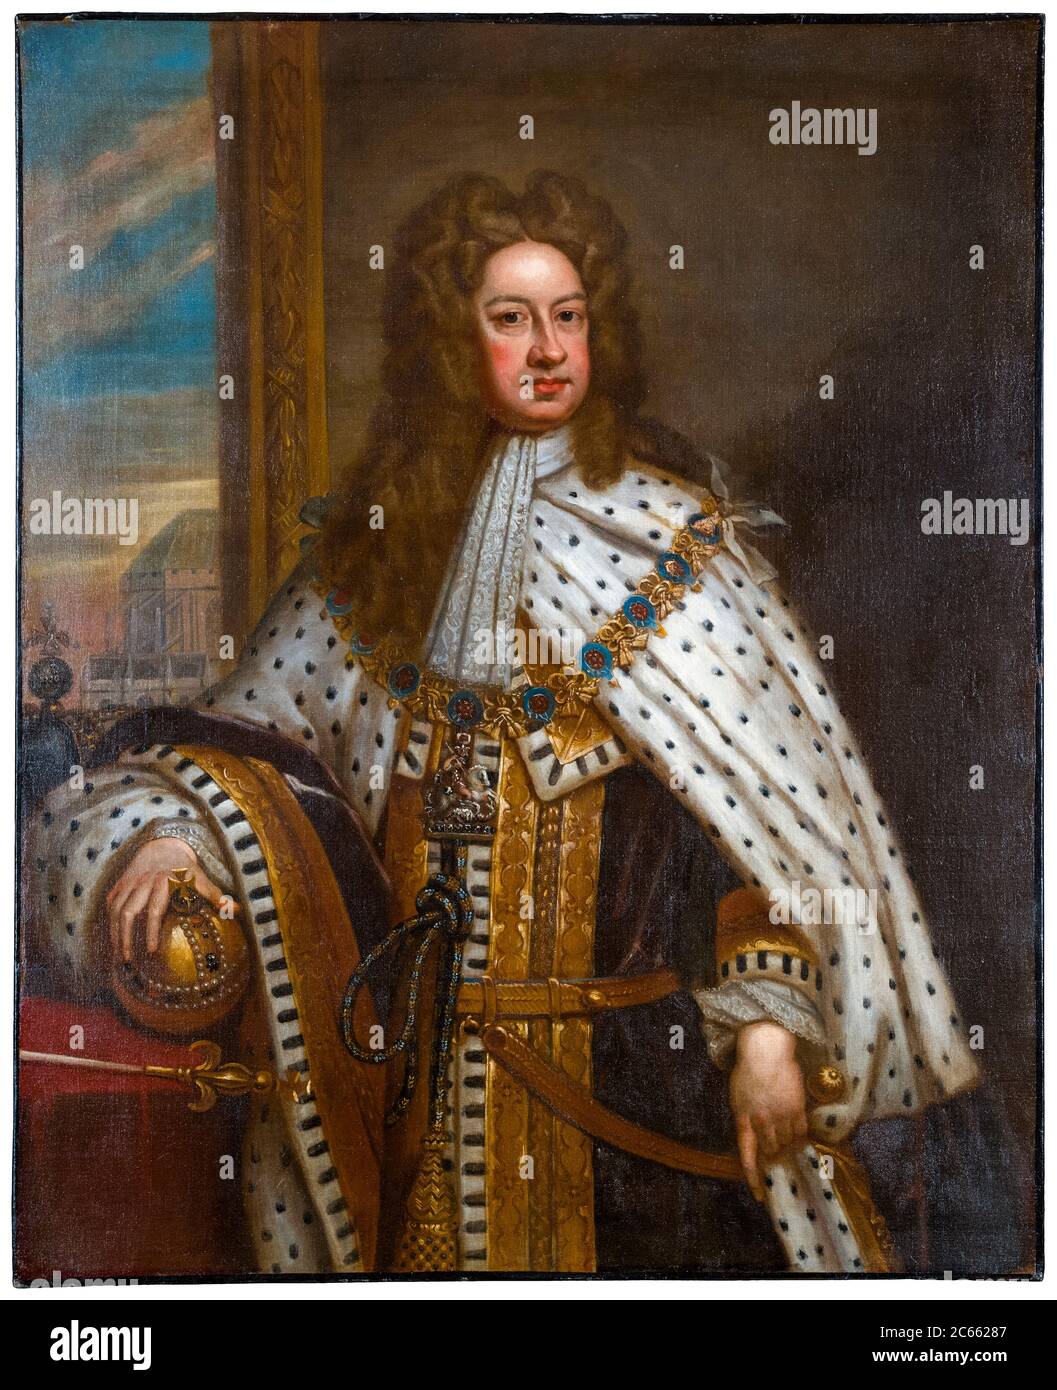 Roi George I de Grande-Bretagne et d'Irlande (1660-1727), règne (1714-1727), portrait peint par Sir Godfrey Kneller, 1714 Banque D'Images